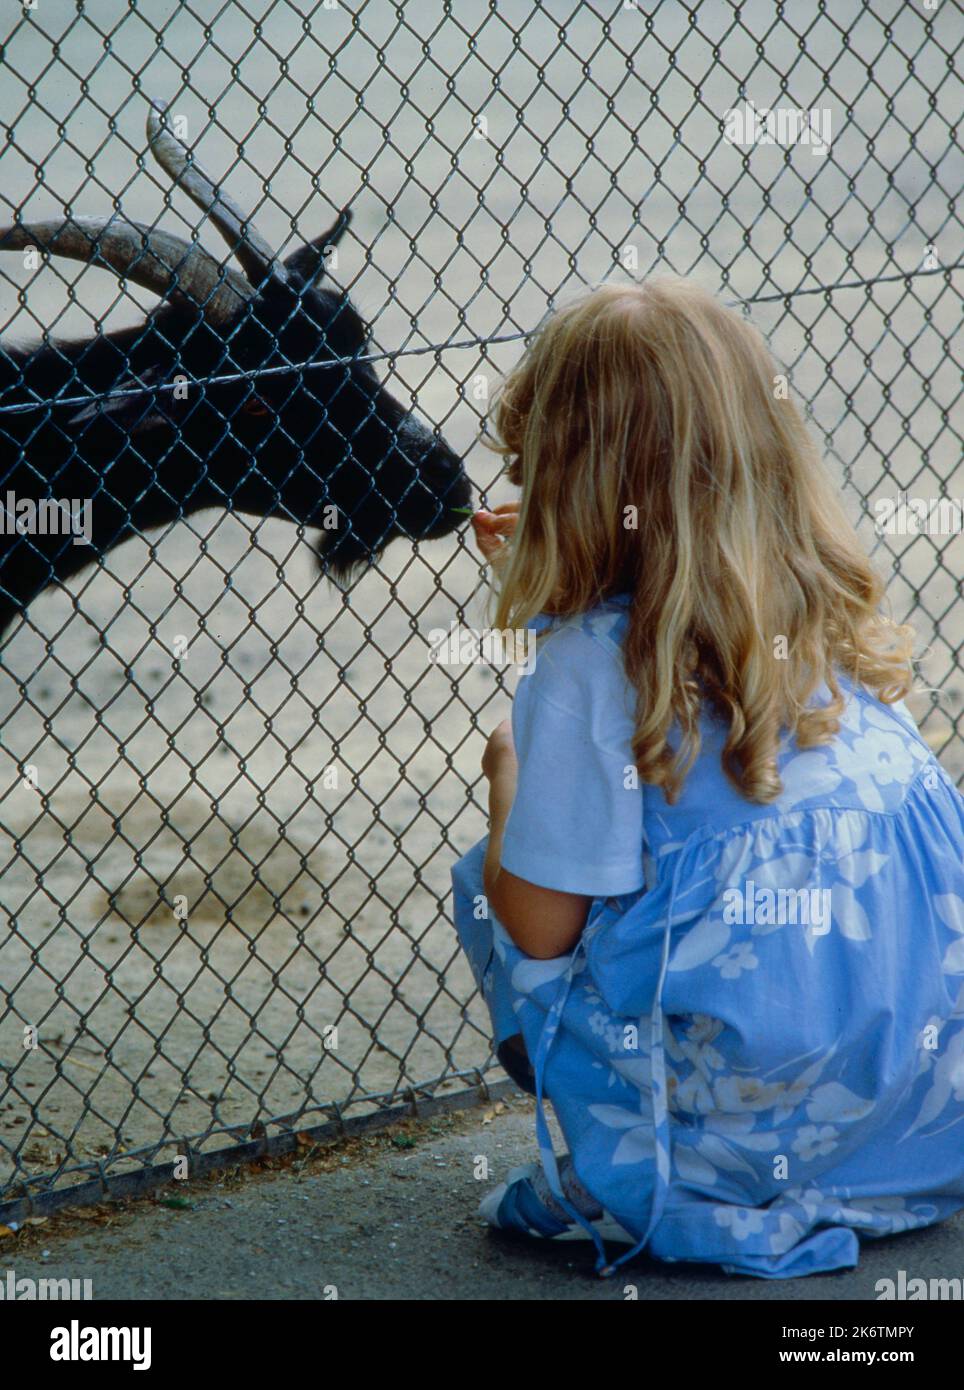 Petite fille joue avec chèvre, clôture en treillis métallique, Zoo Wilhelma Stuttgart, Allemagne, petite fille joue avec nounou chèvre, clôture en treillis métallique, Allemagne Banque D'Images